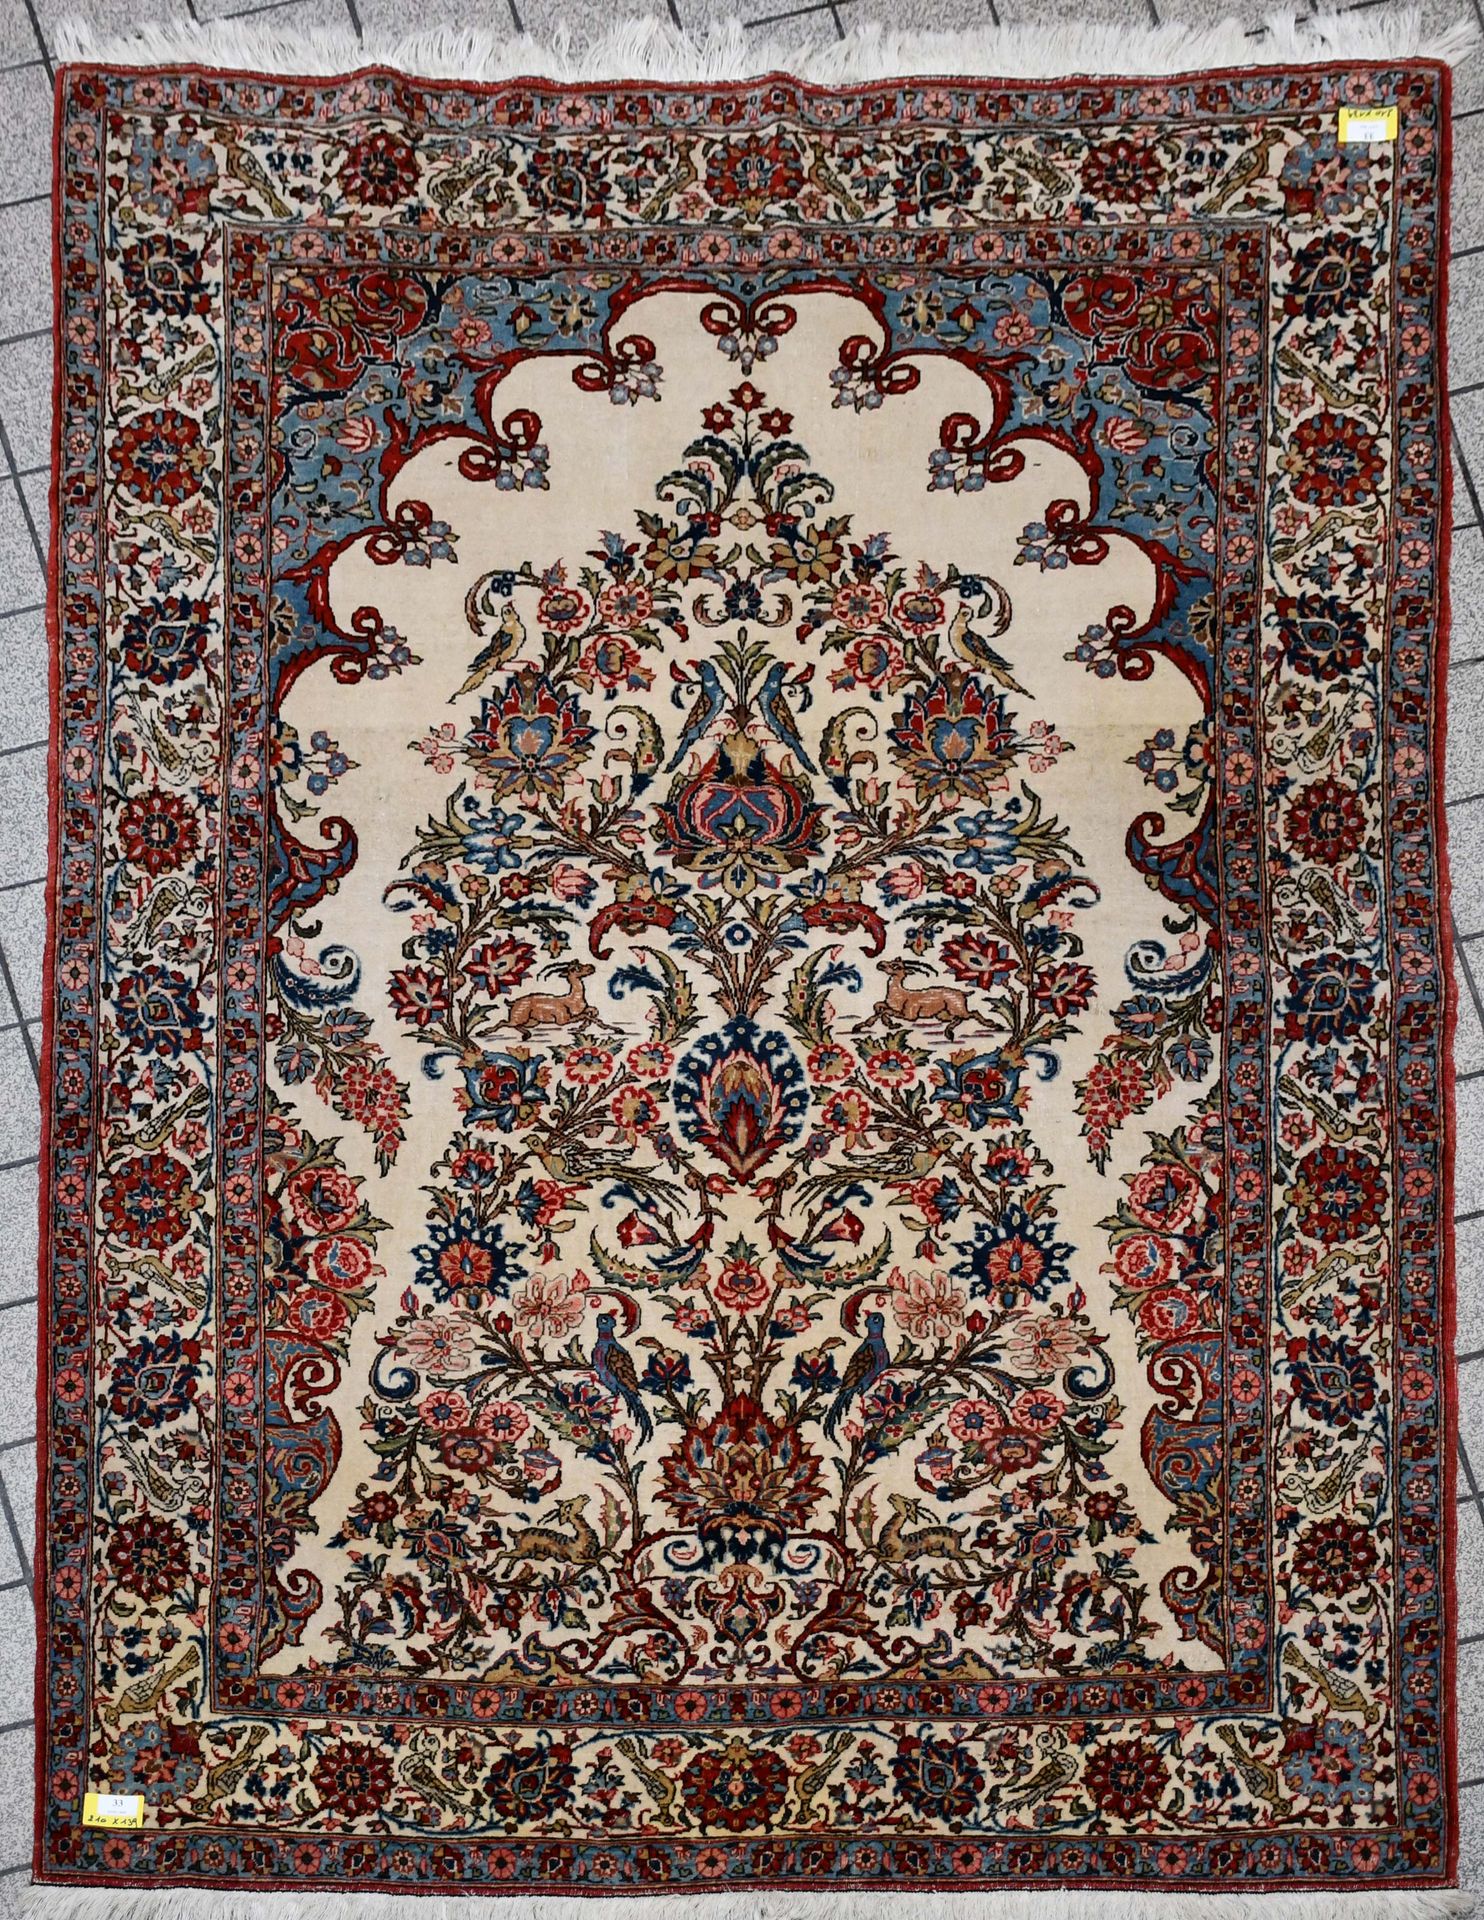 Null Carpet

Carpet of the Orient Ghoum.

Dimensions : 210 cm x 139 cm.